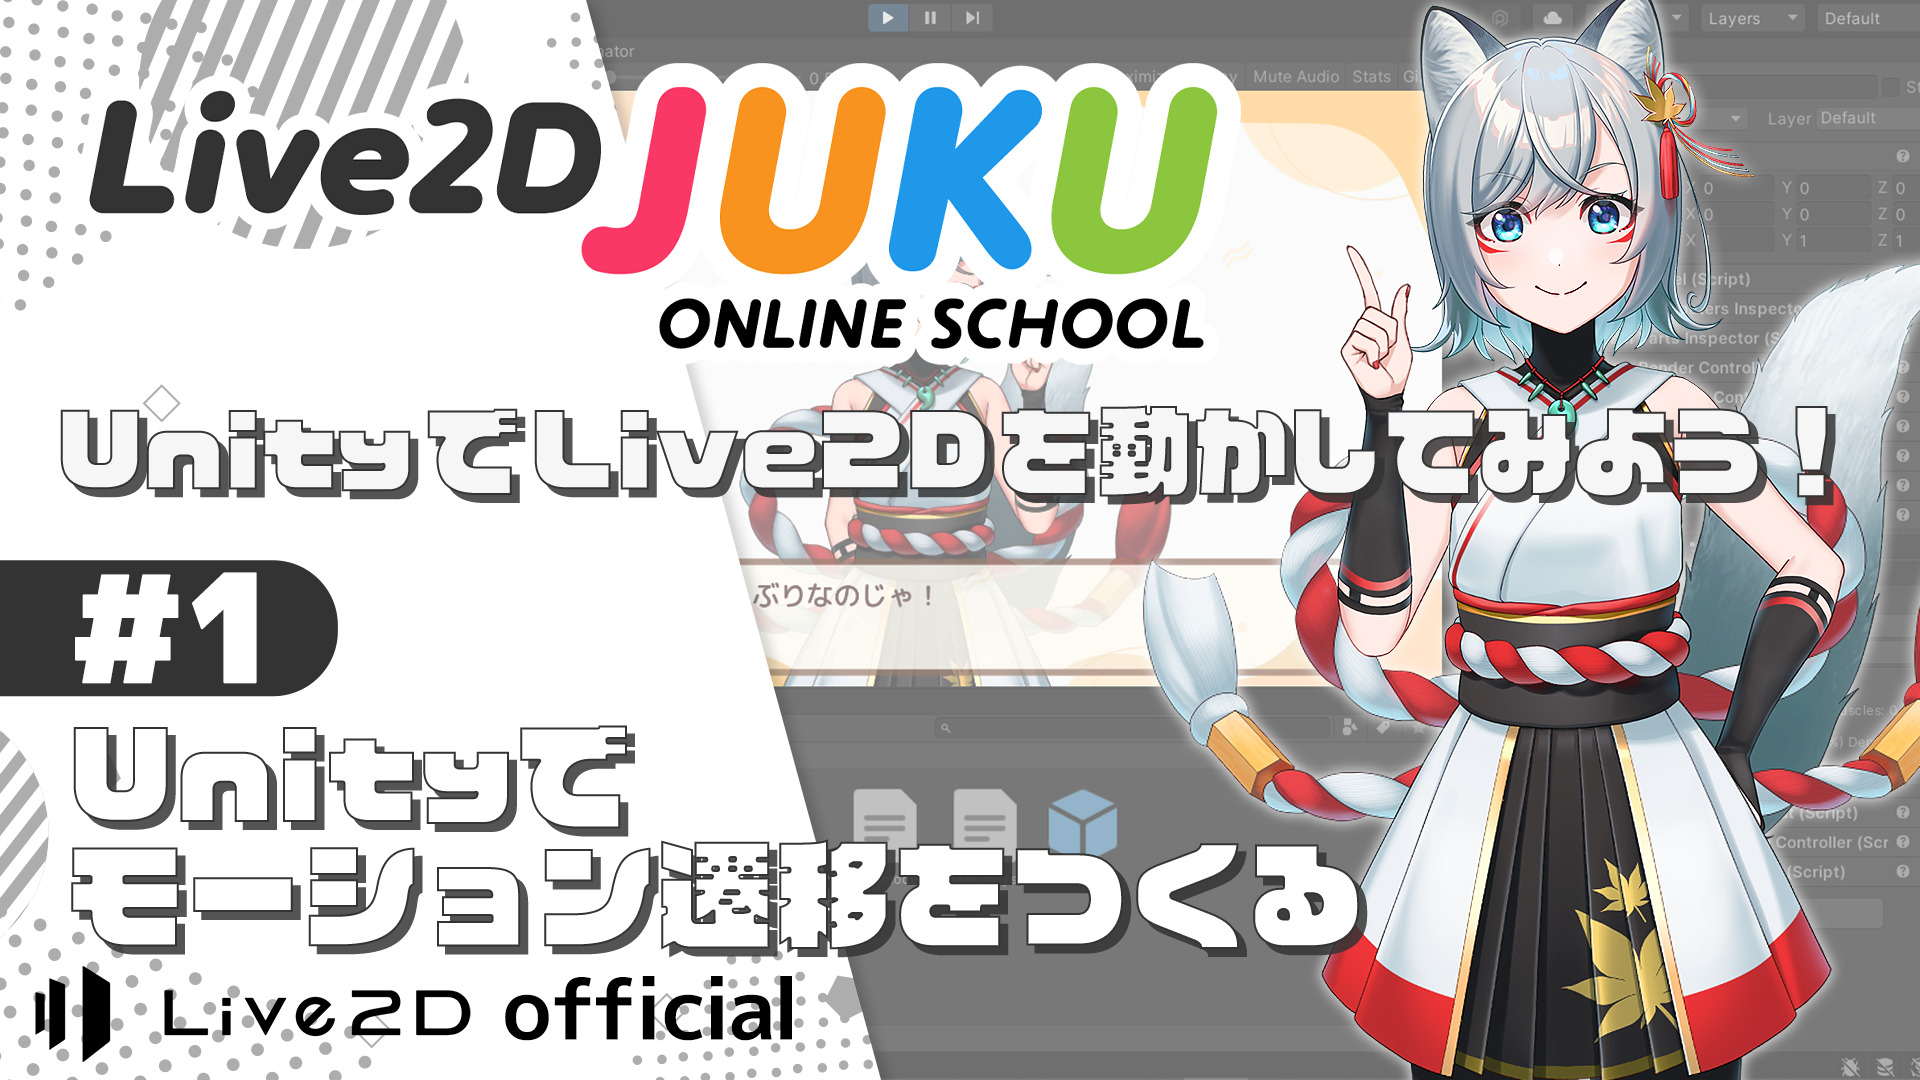 Live2D JUKU 第11弾講座動画を公開しました！